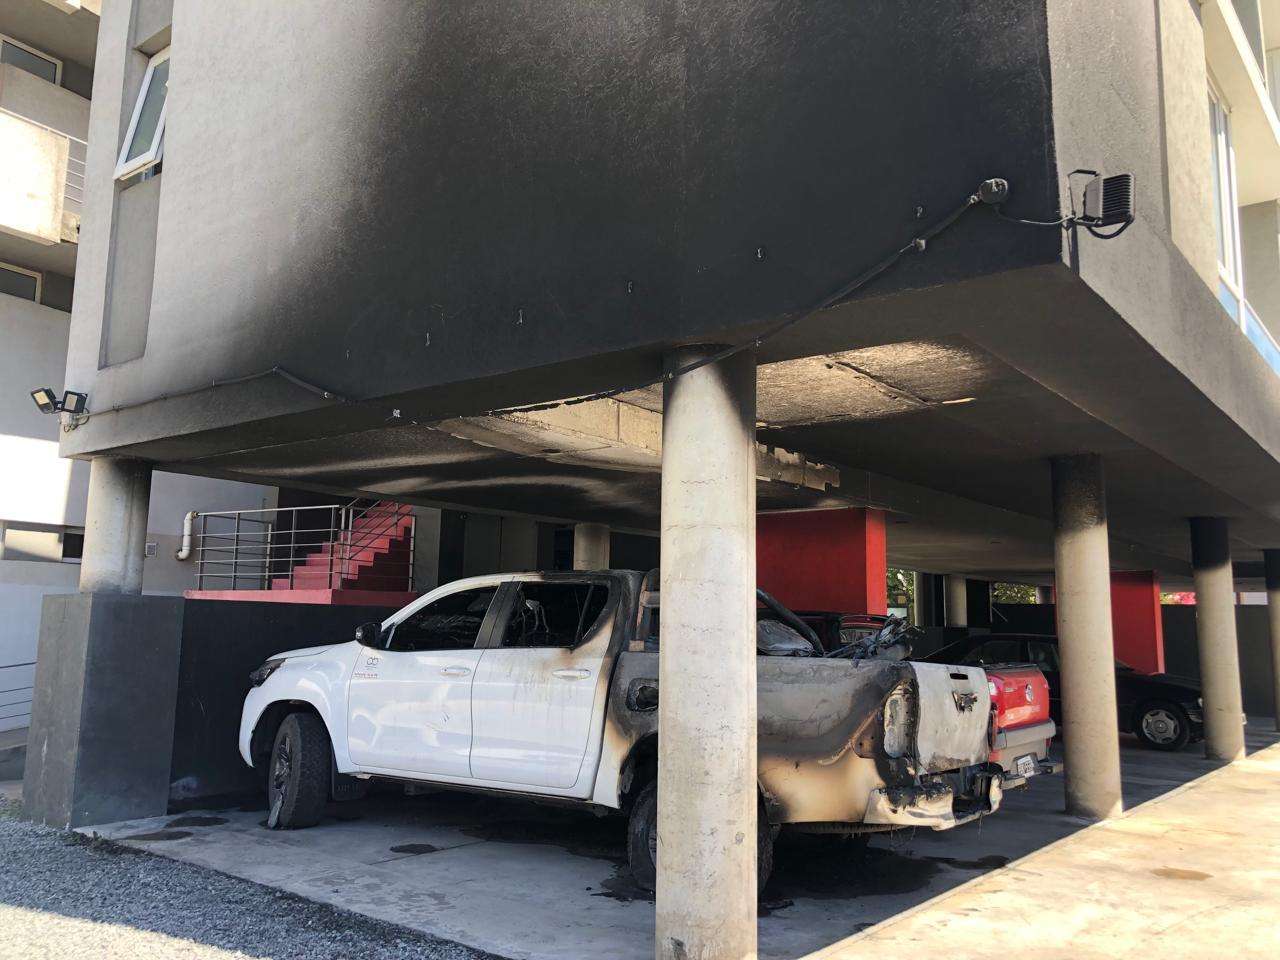 La camioneta, la moto y el complejo de departamentos afectados por las llamas.